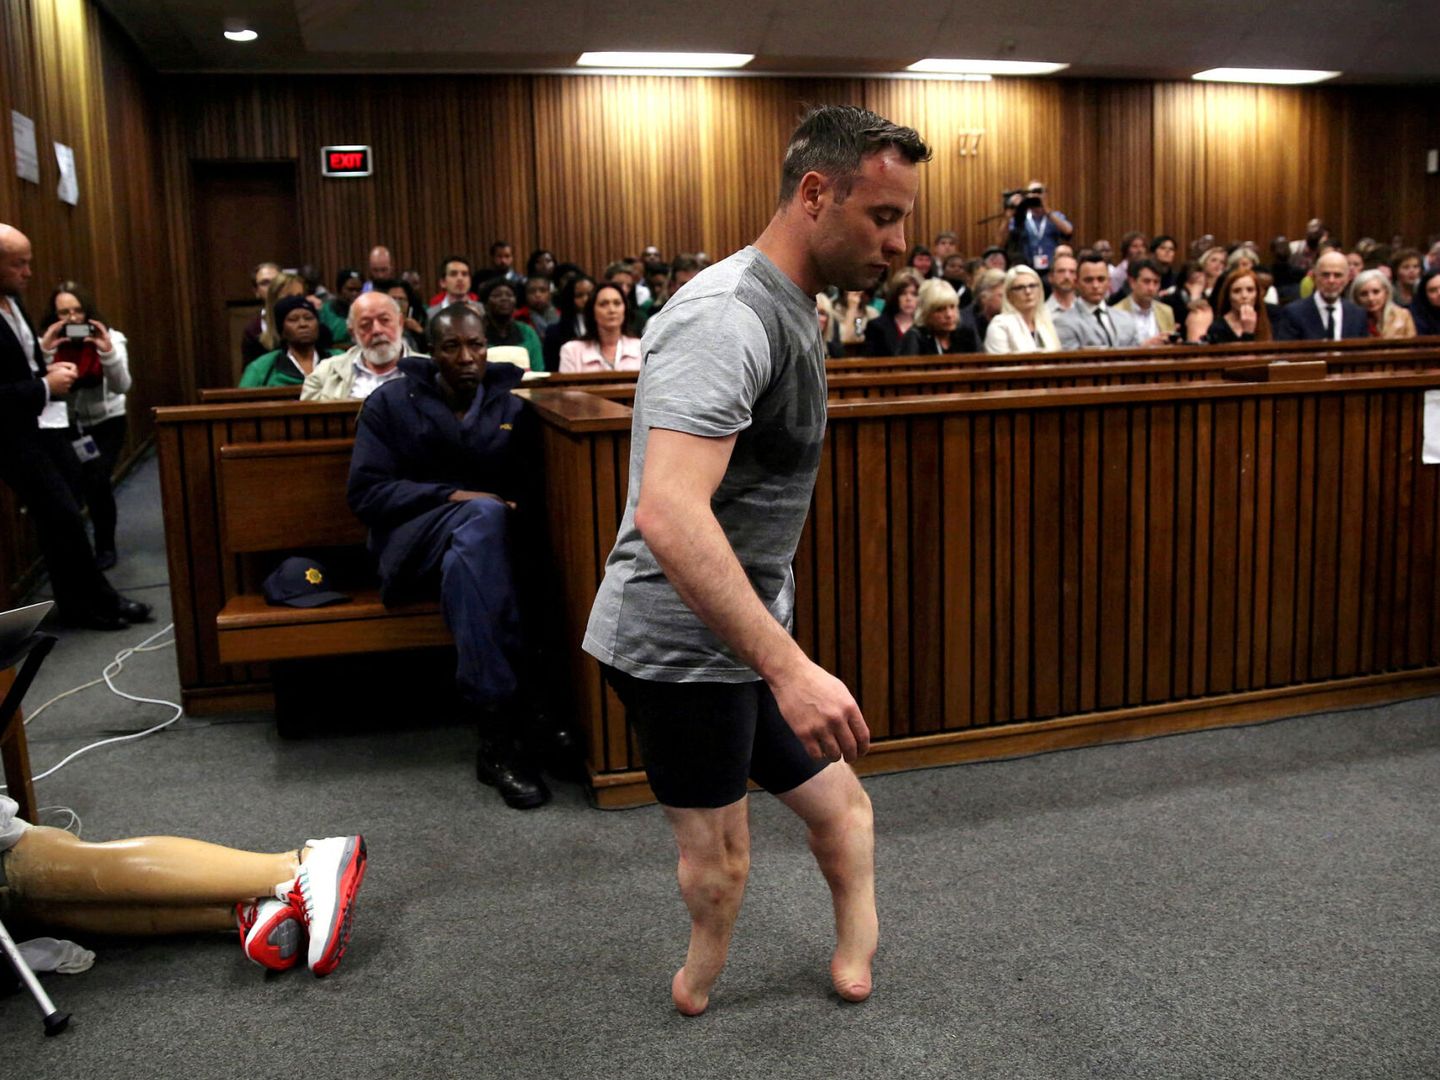 Oscar Pistorius camino sin las prótesis para declarar en el juicio por el asesinato de Reeva Steenkamp (REUTERS/Siphiwe Sibeko).